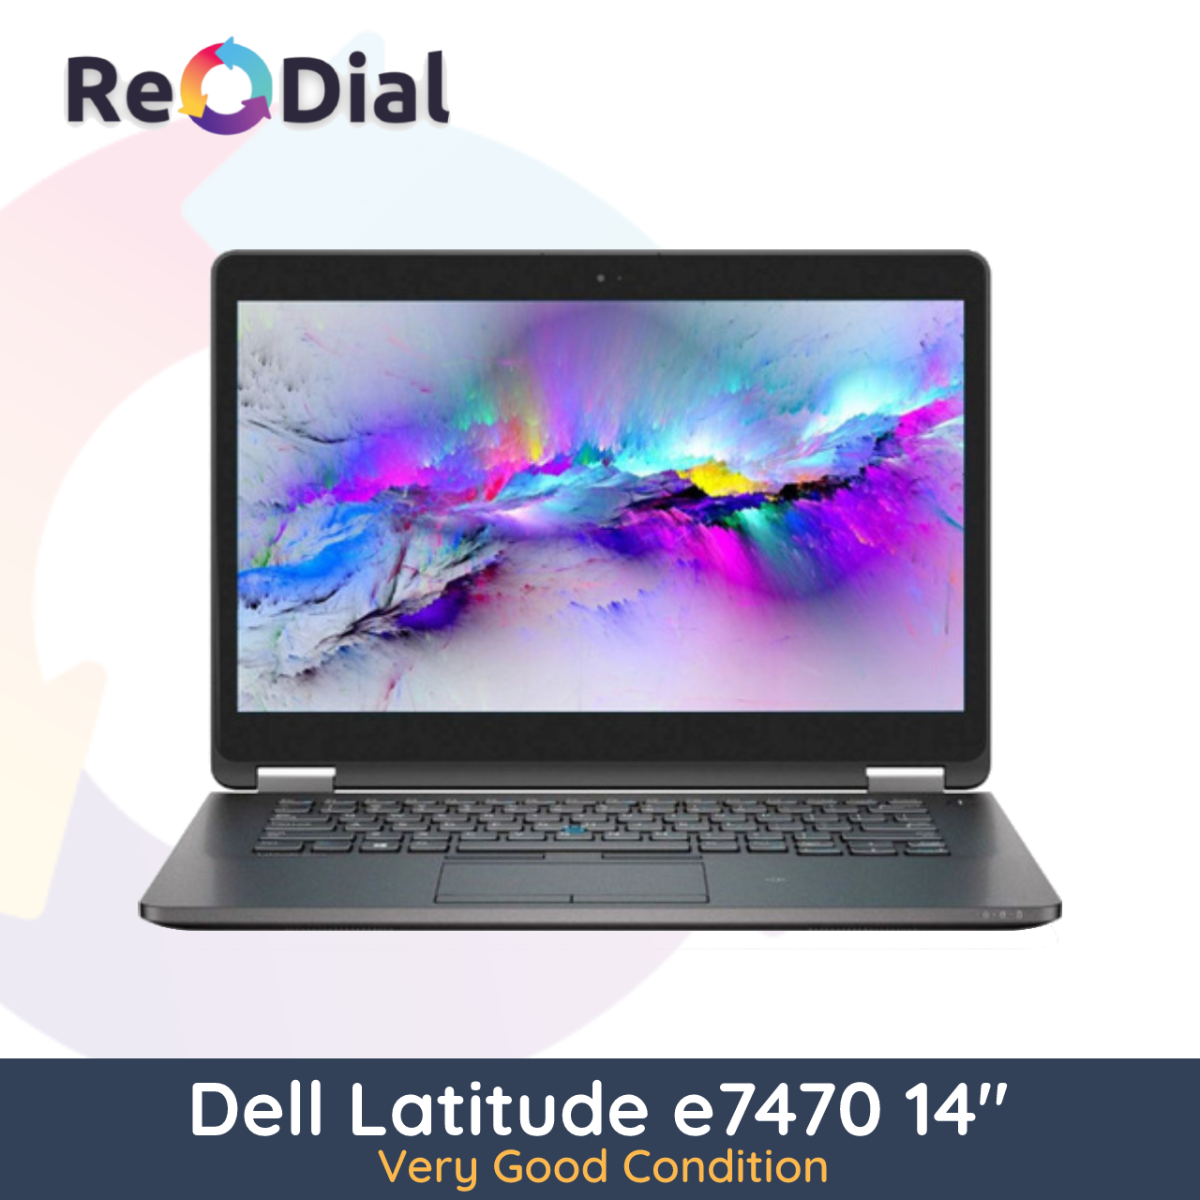 Dell Latitude E7470 14" i7-6600U 512GB 16GB RAM - Wins 10 Home - Very Good Condition